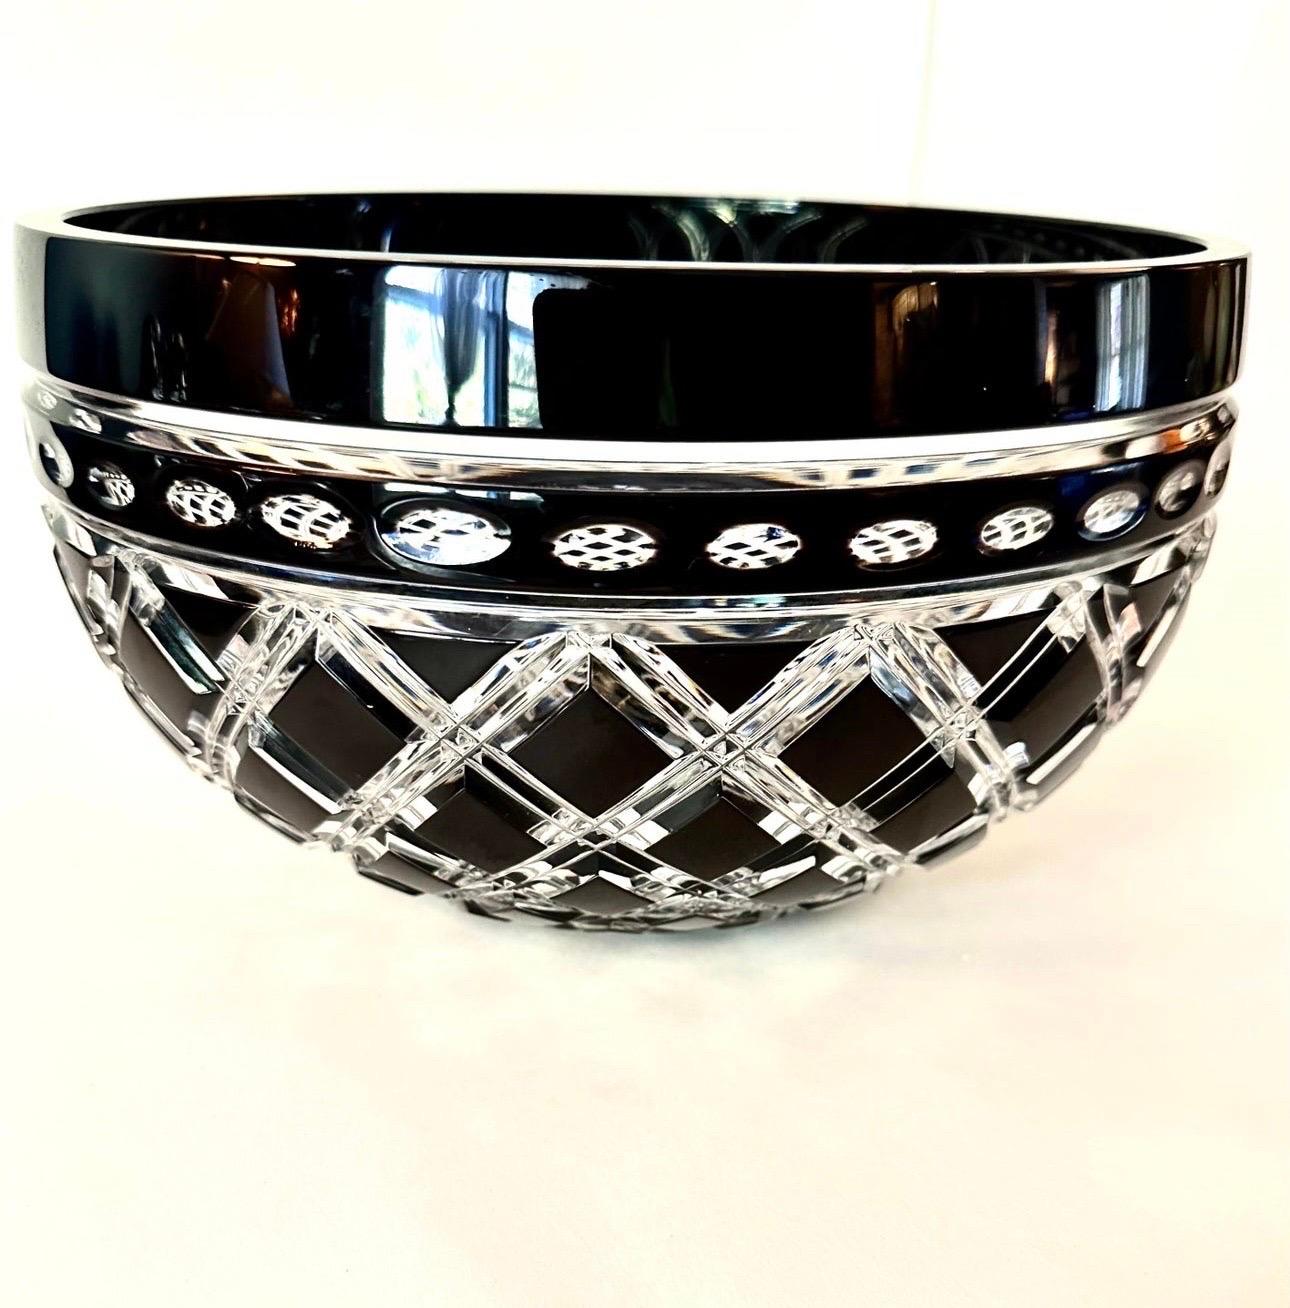 Vintage Early 20th Century Hand Cut Clear Crystal und schwarzem Onyx Large Serving Bowl in Polen gemacht. Ein schönes Stück mit einem modernen Design, das in jede Wohnung passt. In ausgezeichnetem Zustand, ohne Chips oder Risse. Würde sich gut als